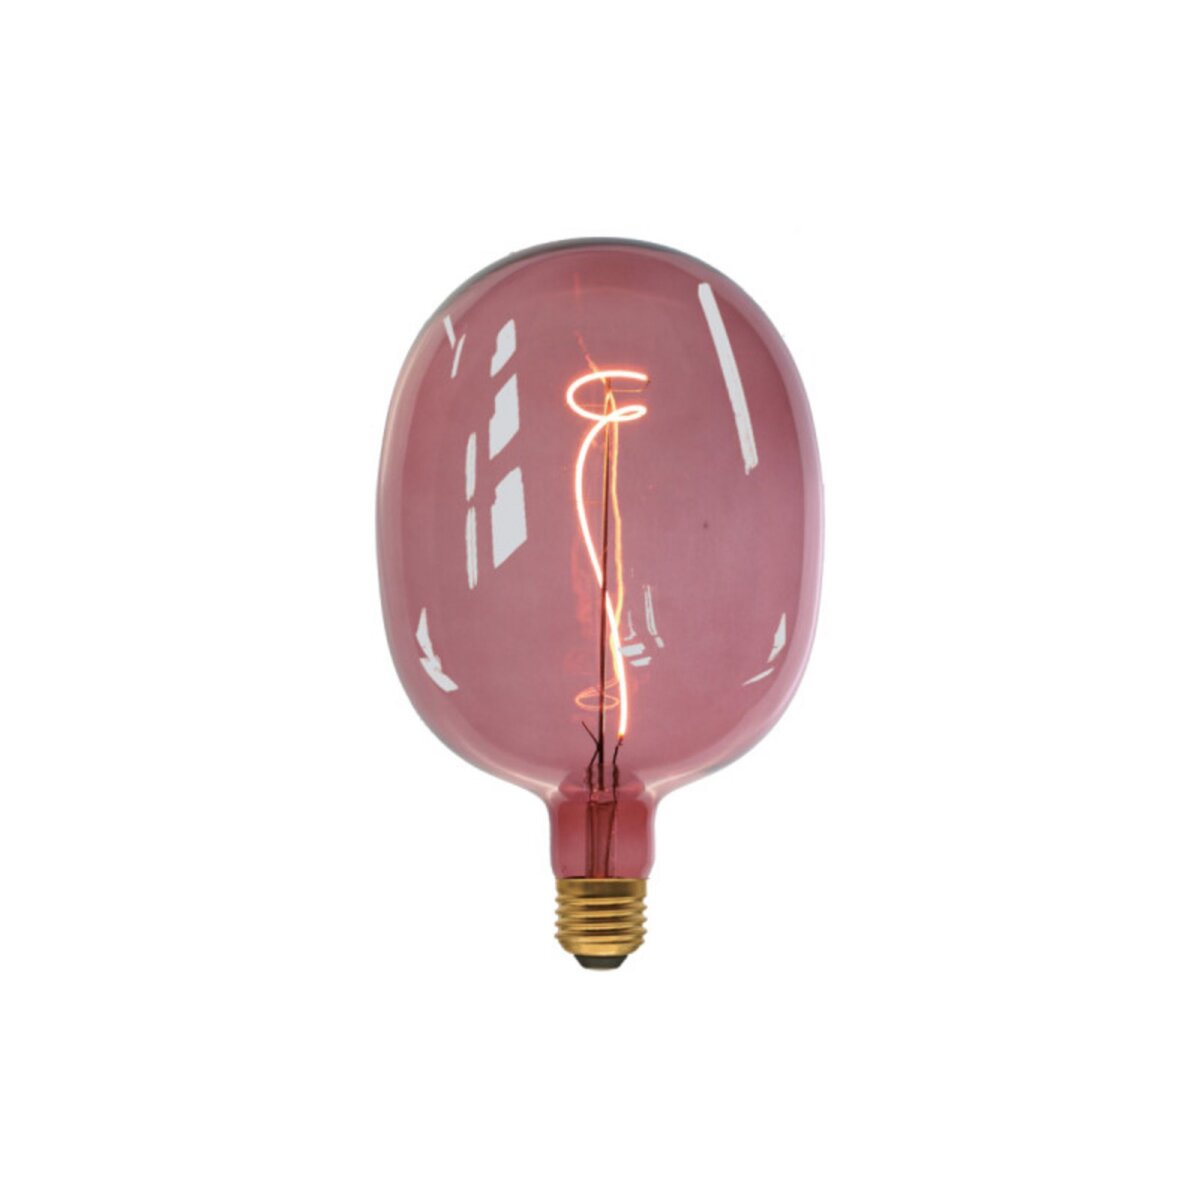  Ampoule LED rose dégradée XXCELL - 4 W - 200 lumens - 3000 K - E27